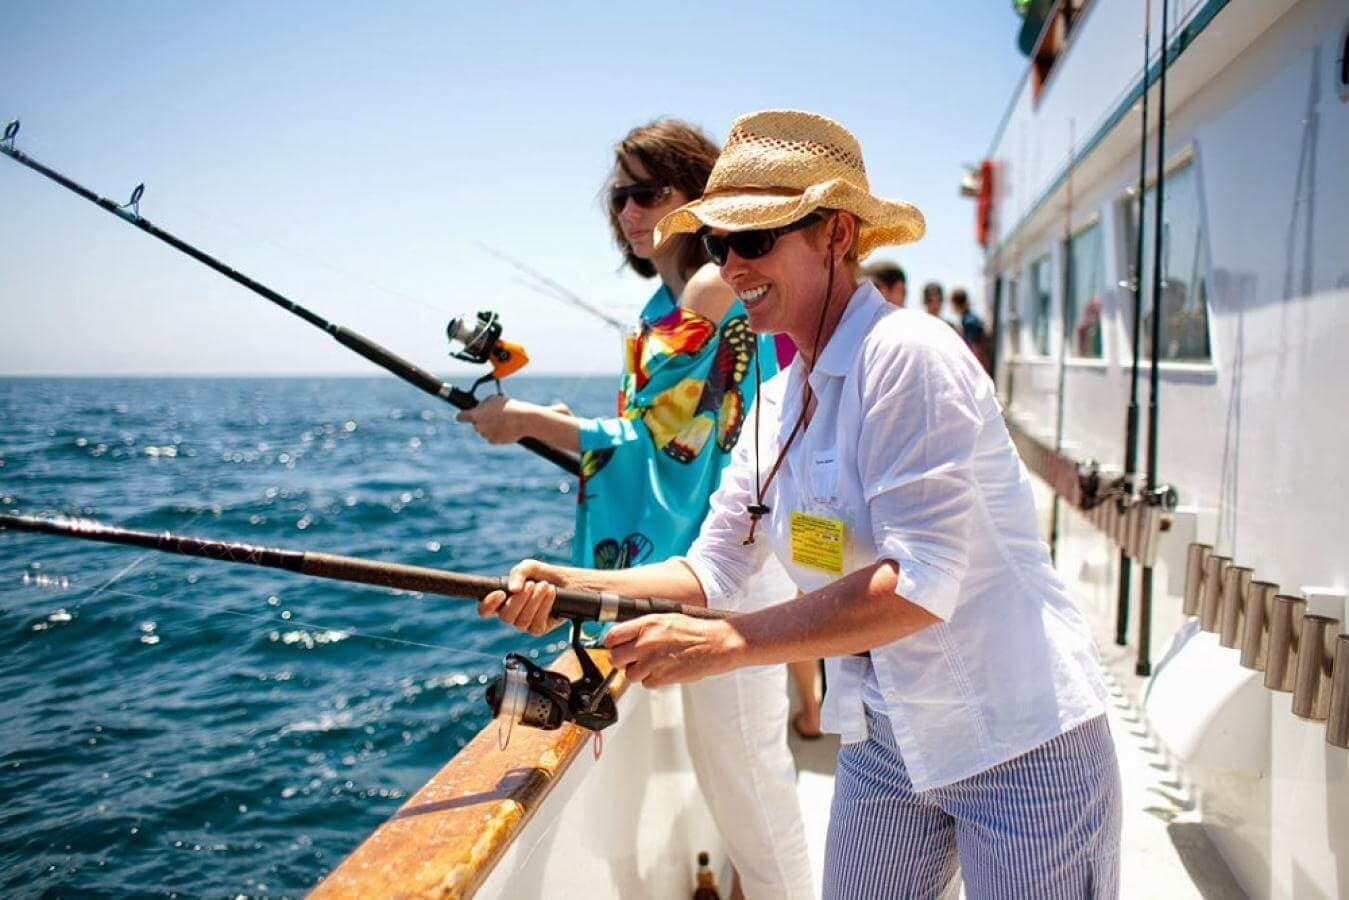 Una mujer turista pescando un pez con la cara sonriente y otra mujer lo mira